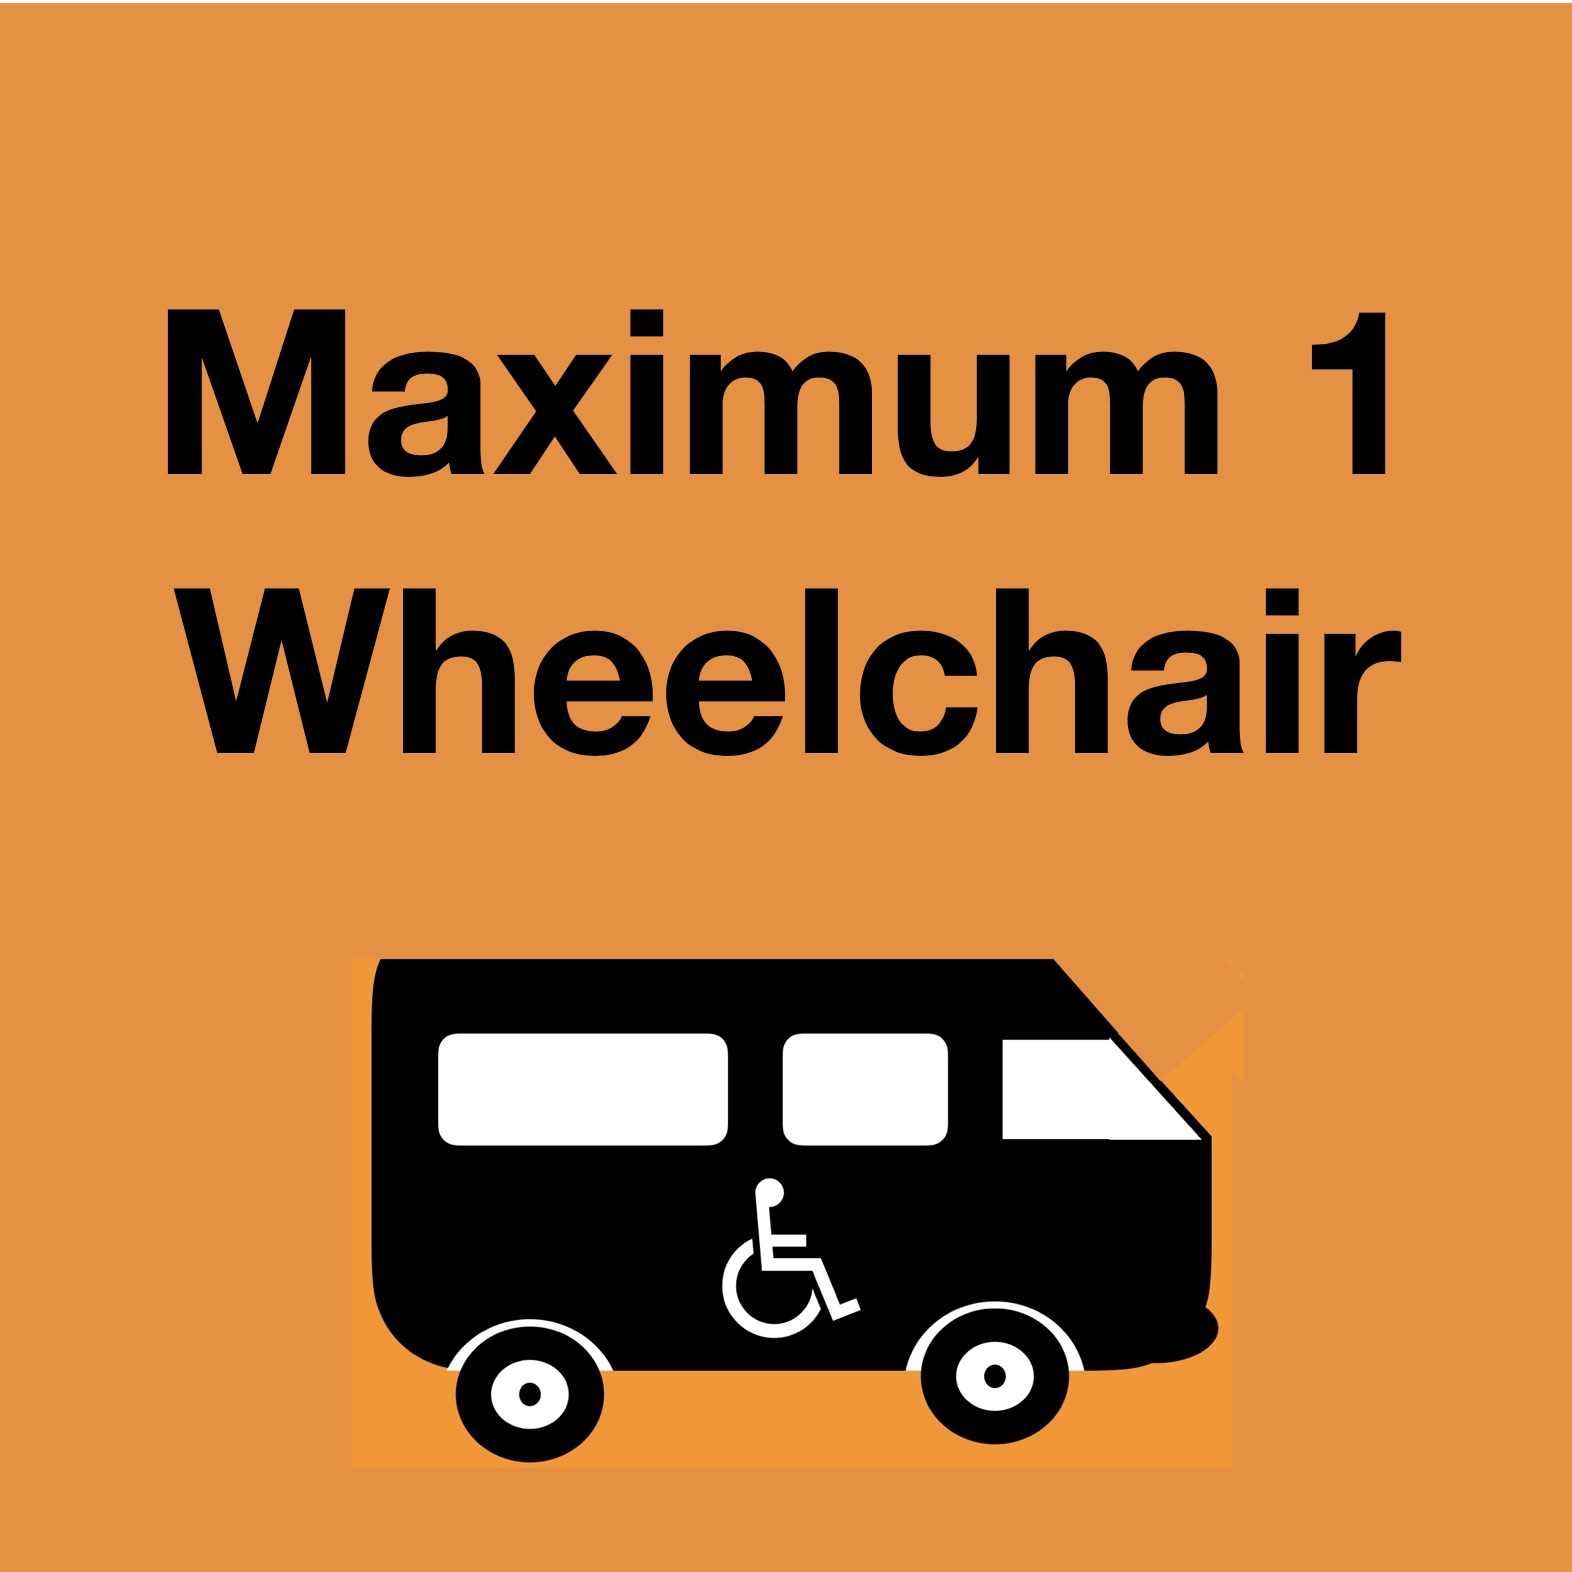 1 Wheelchair